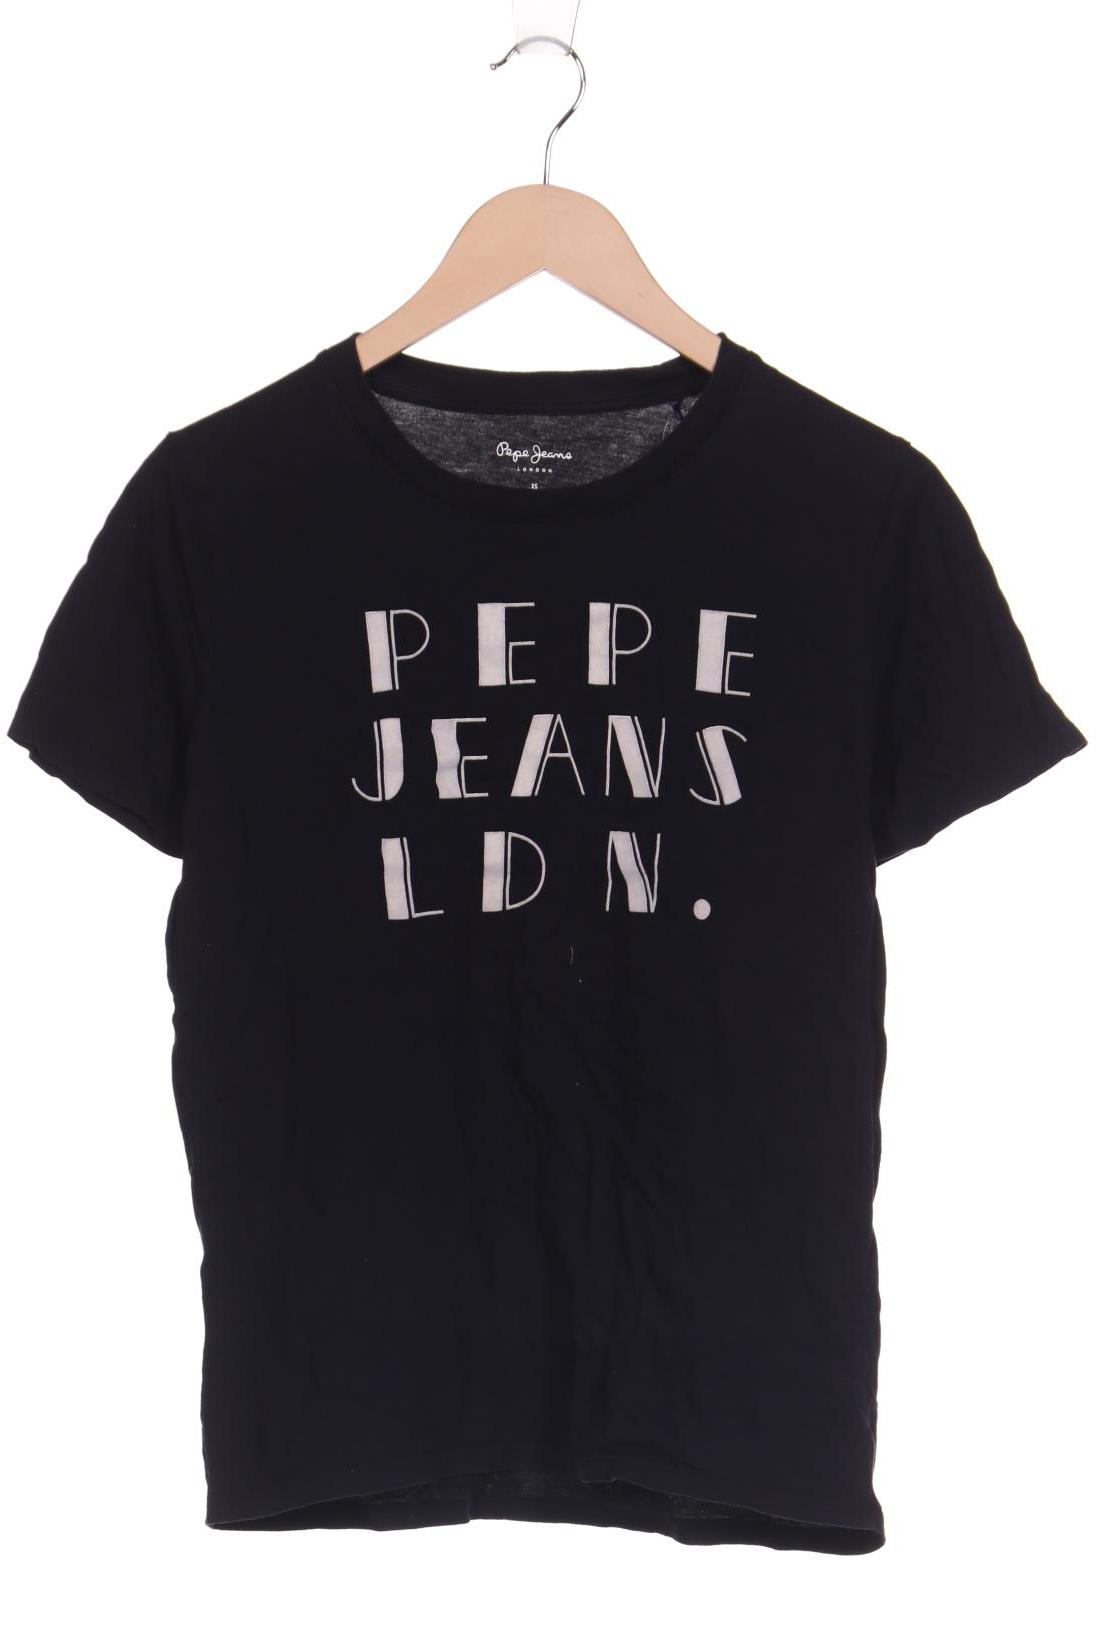 Pepe Jeans Herren T-Shirt, schwarz von Pepe Jeans